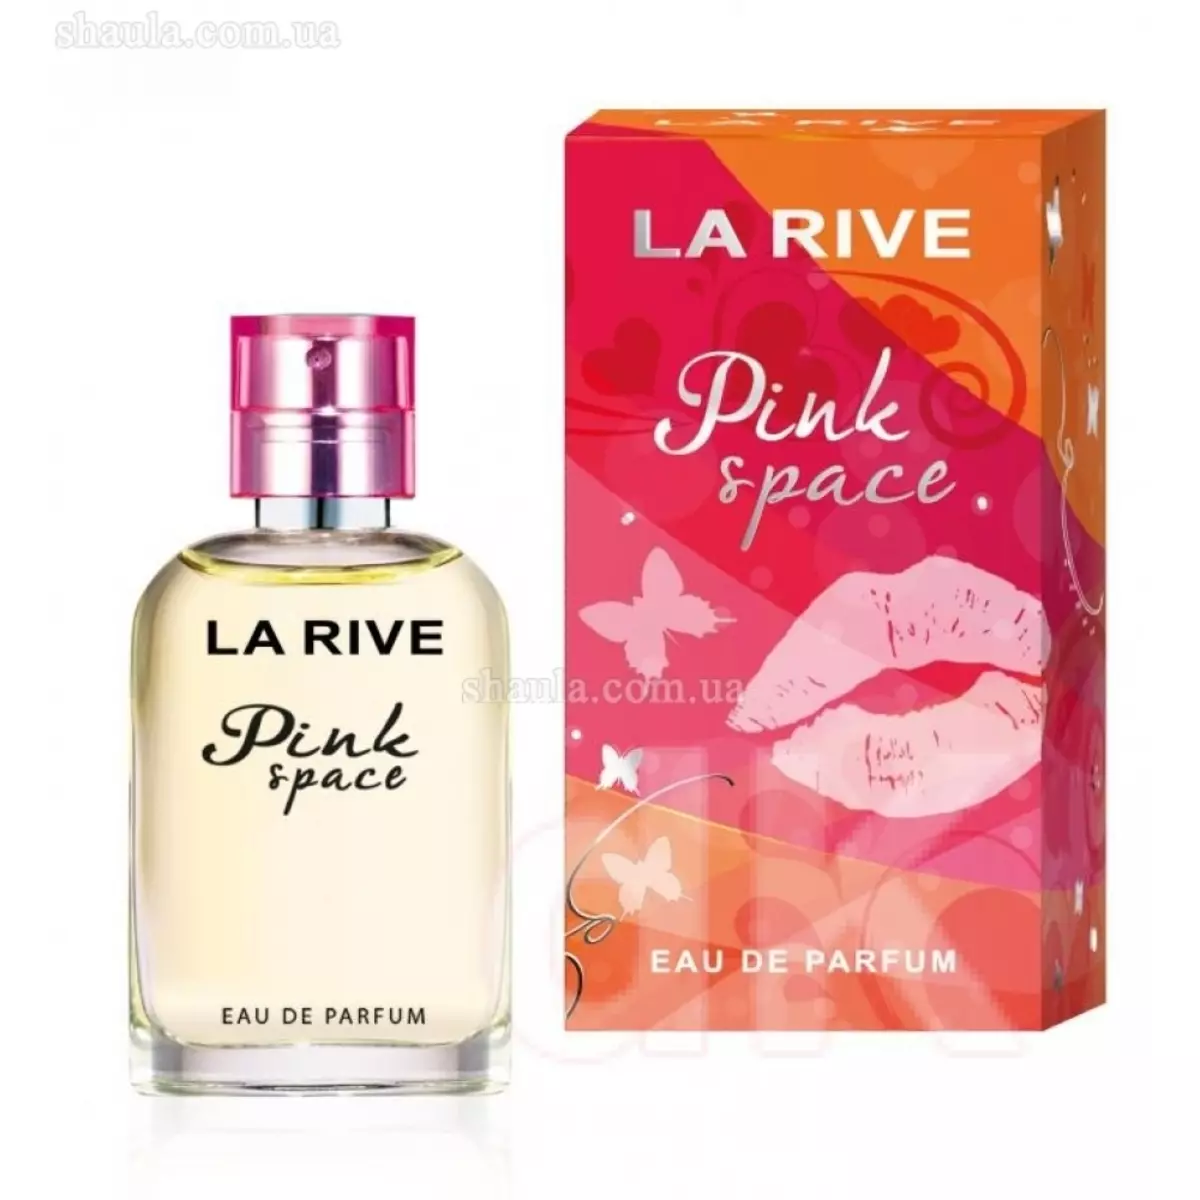 Parfümerie La Rive: Toilettëpabeier Waasser, Parfumerie, Aner Fraen a Männer d'd'Parfumen Aromen Kritik 25219_4